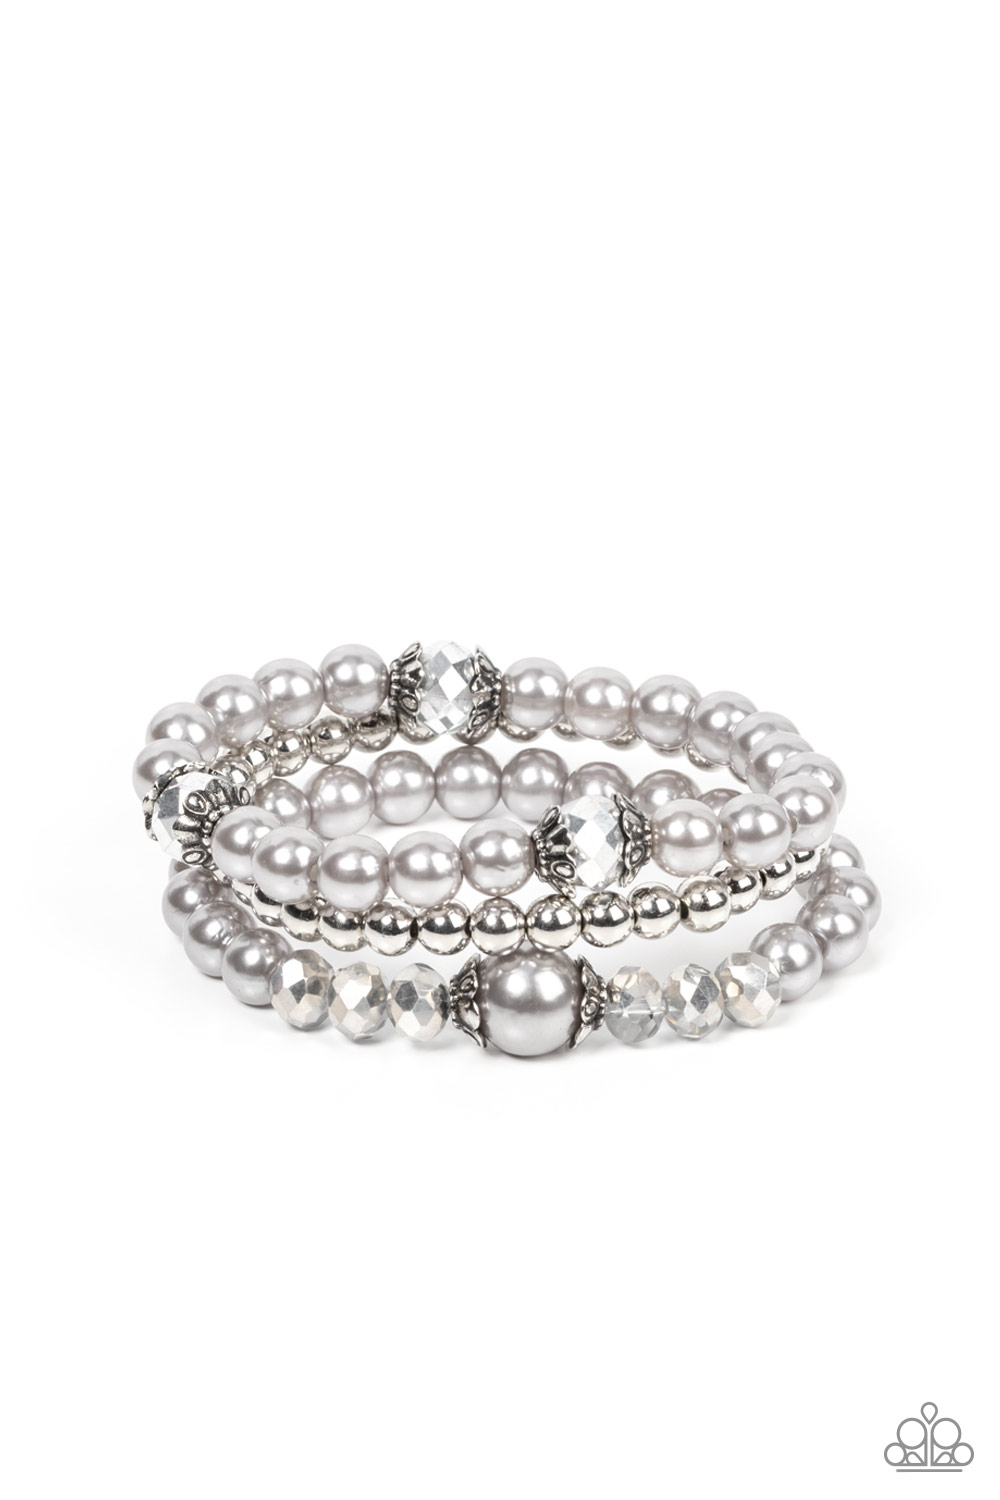 Bracelet - Positively Polished - Silver